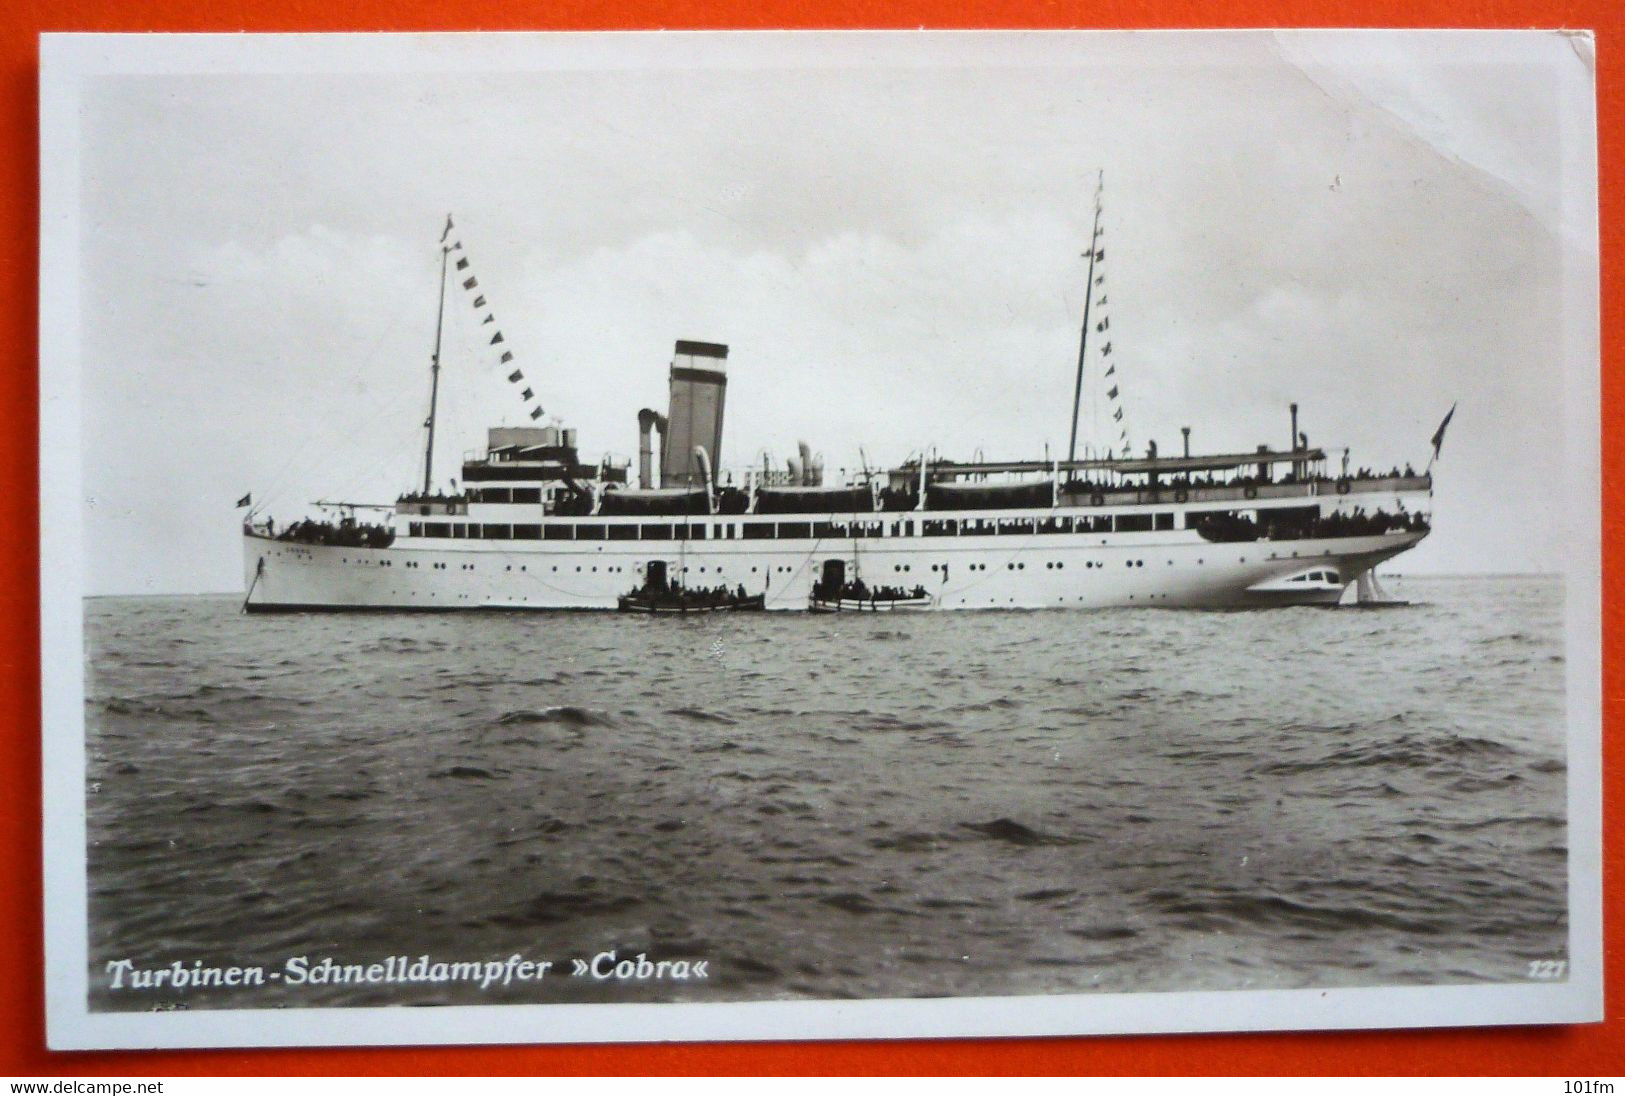 TURBINEN - SCHNELLDAMPFER "COBRA" - AUF HOHER SEE 17.JUNI.1932 - Steamers